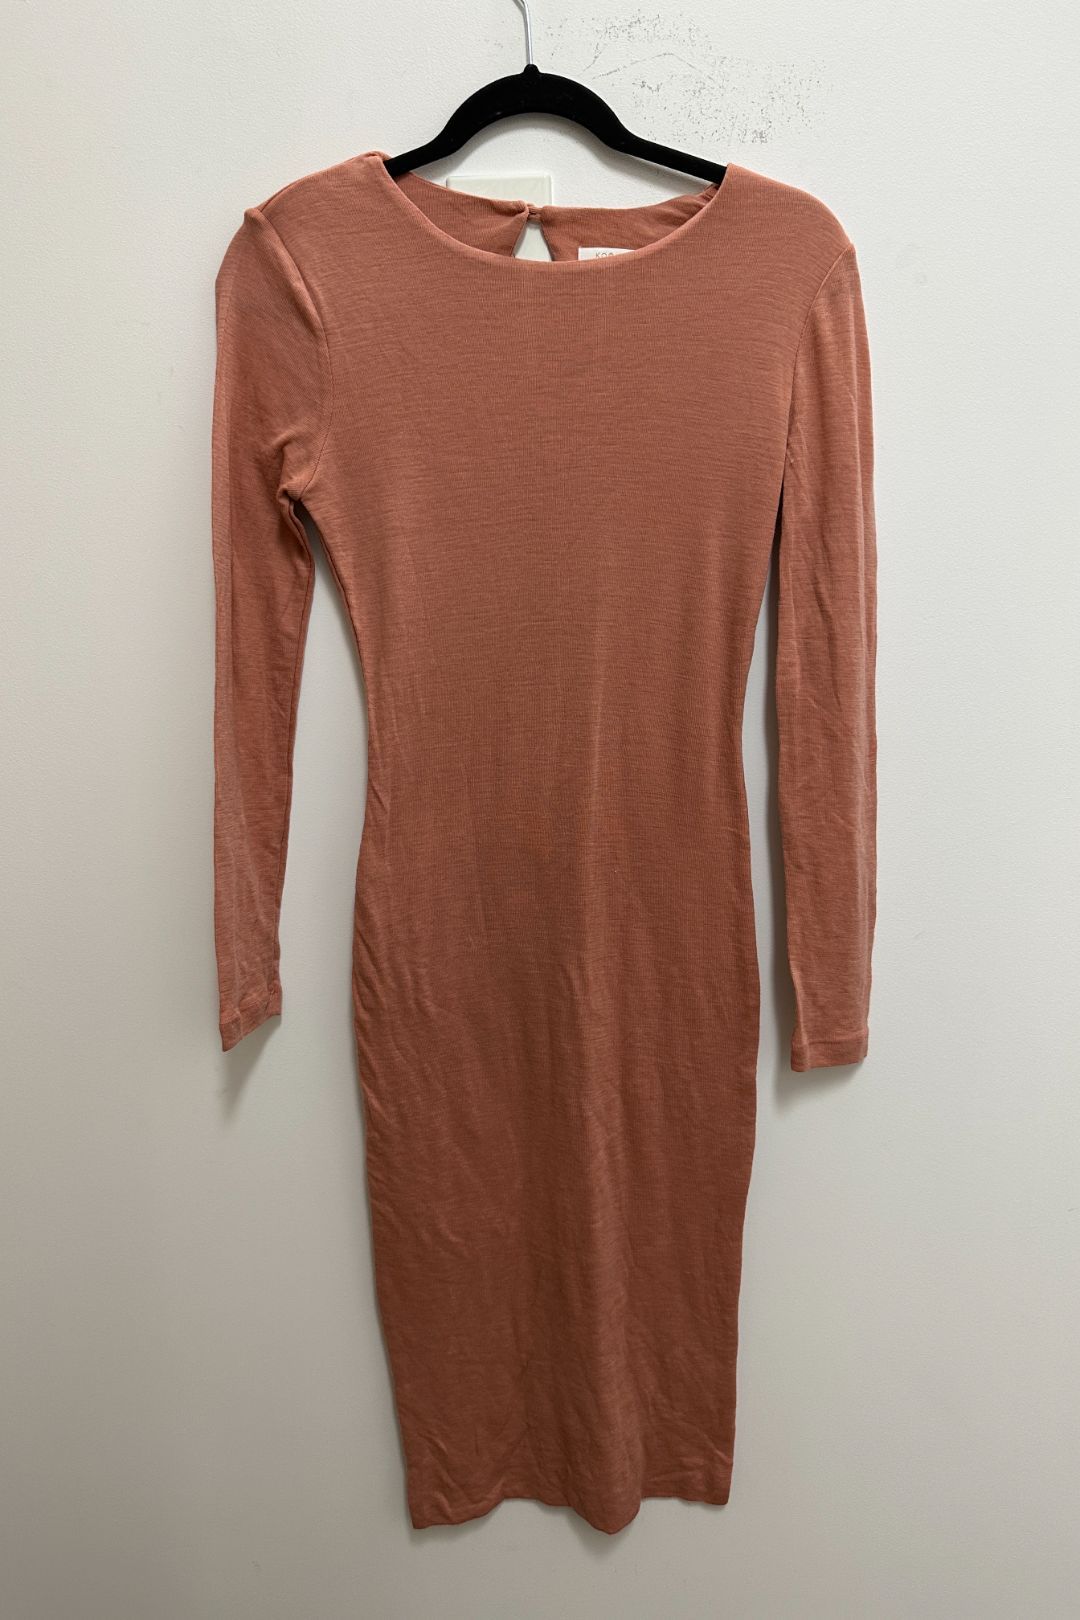 Kookai Wool Midi Dress In Apricot 